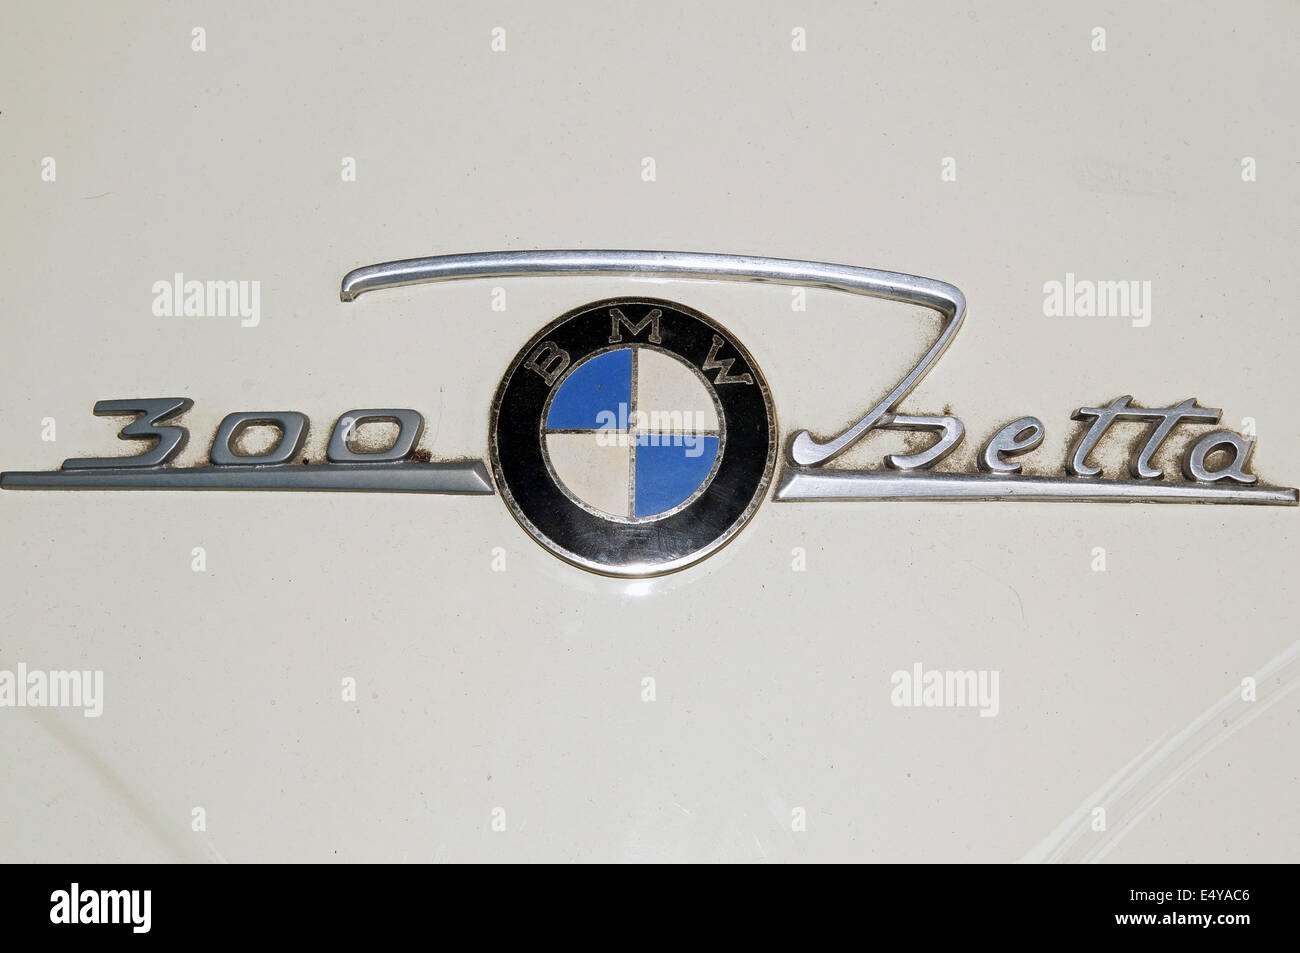 Il logo di automobili BMW Isetta Foto Stock